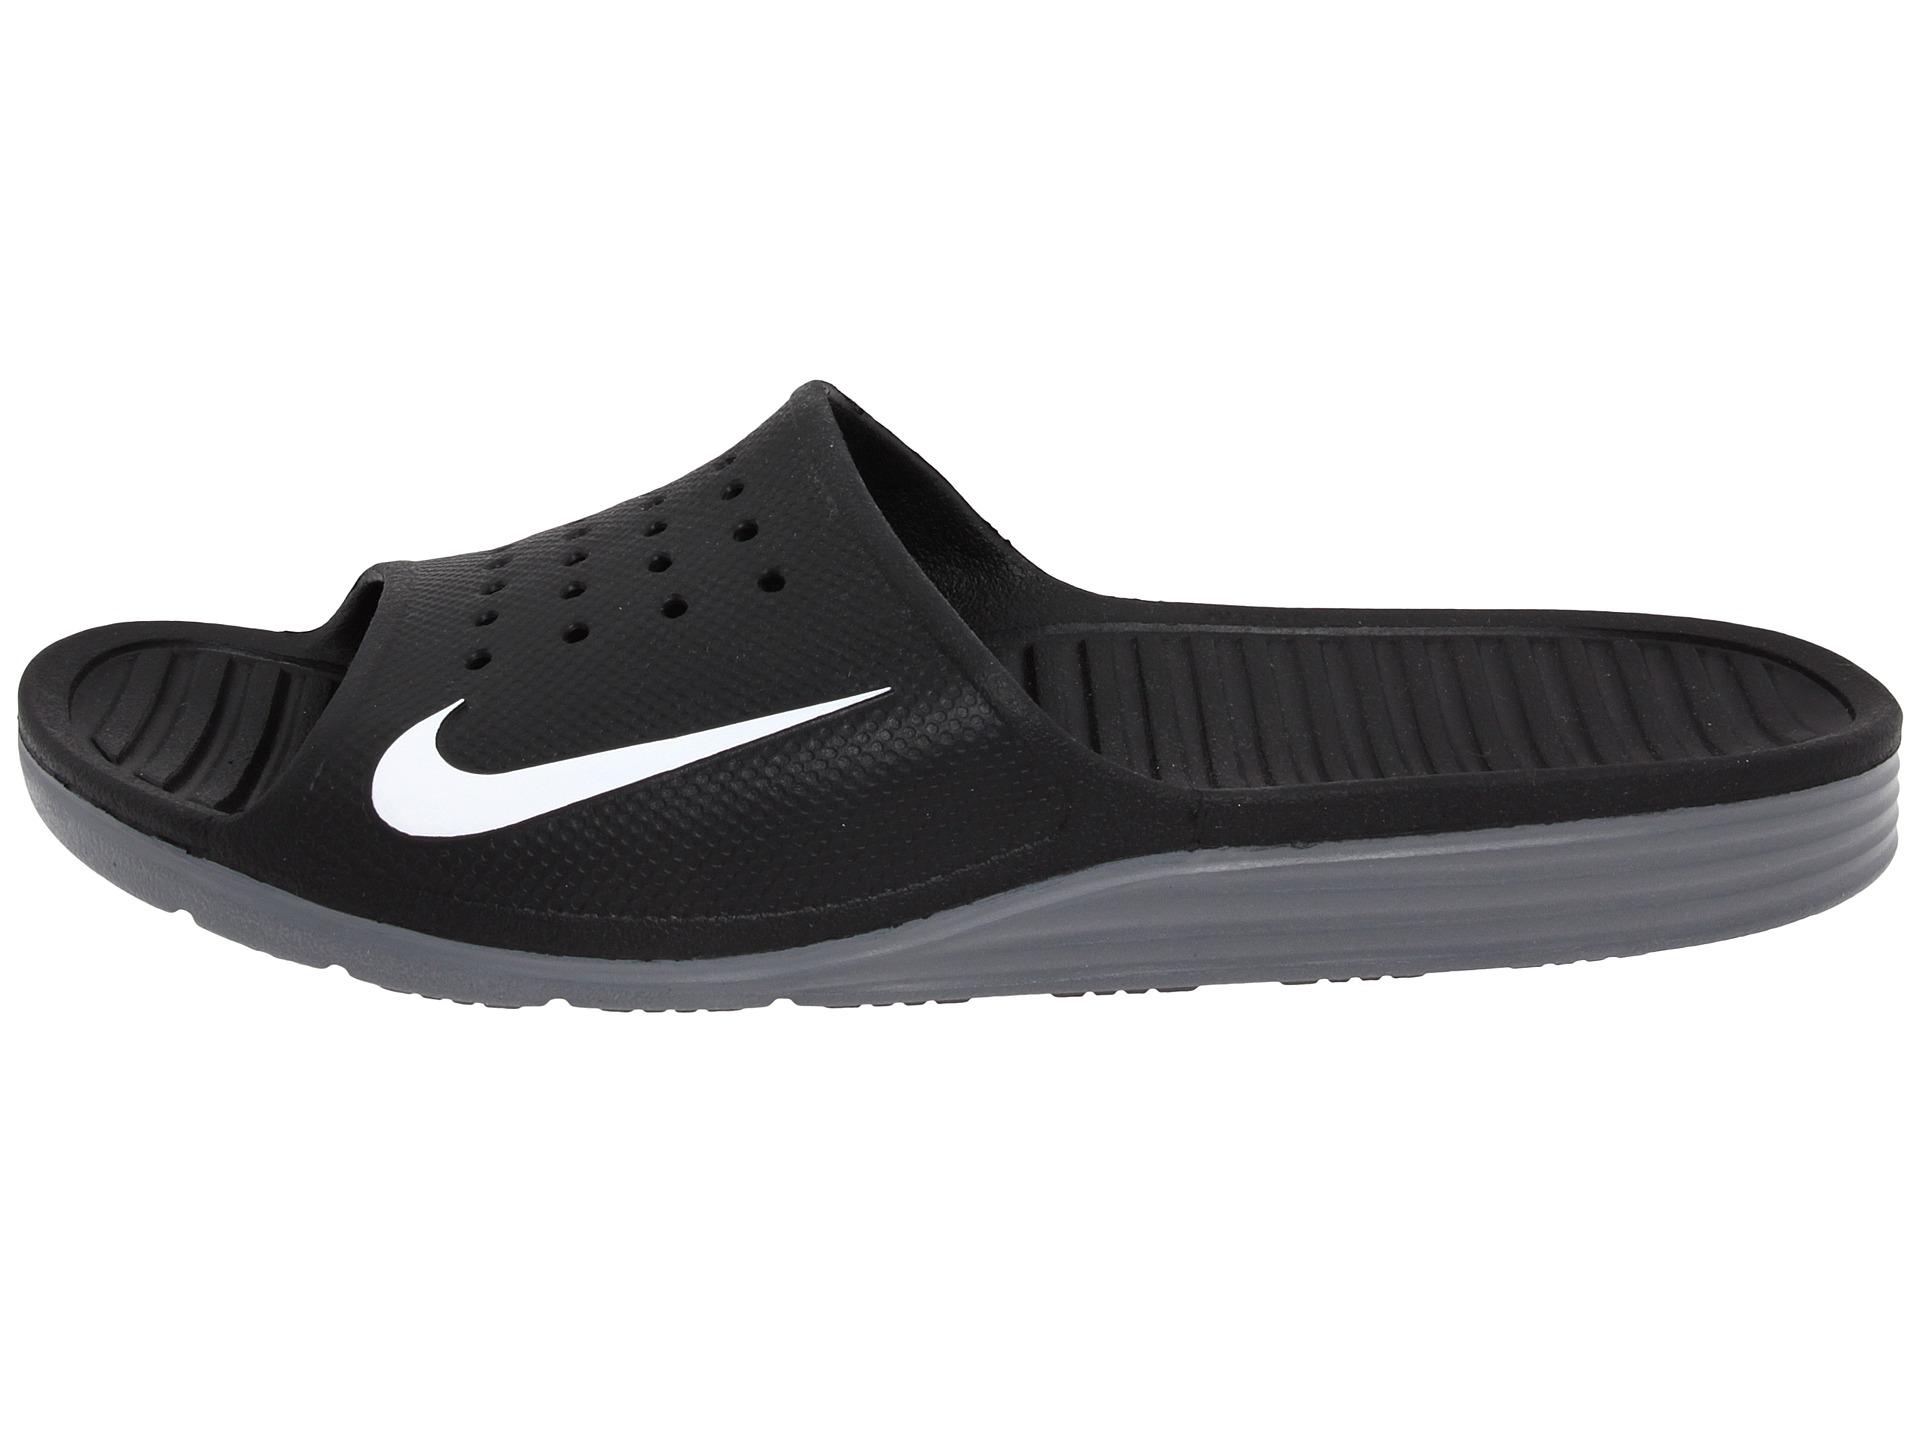 Nike Rubber Solarsoft Slide in Black/White (Black) for Men - Lyst